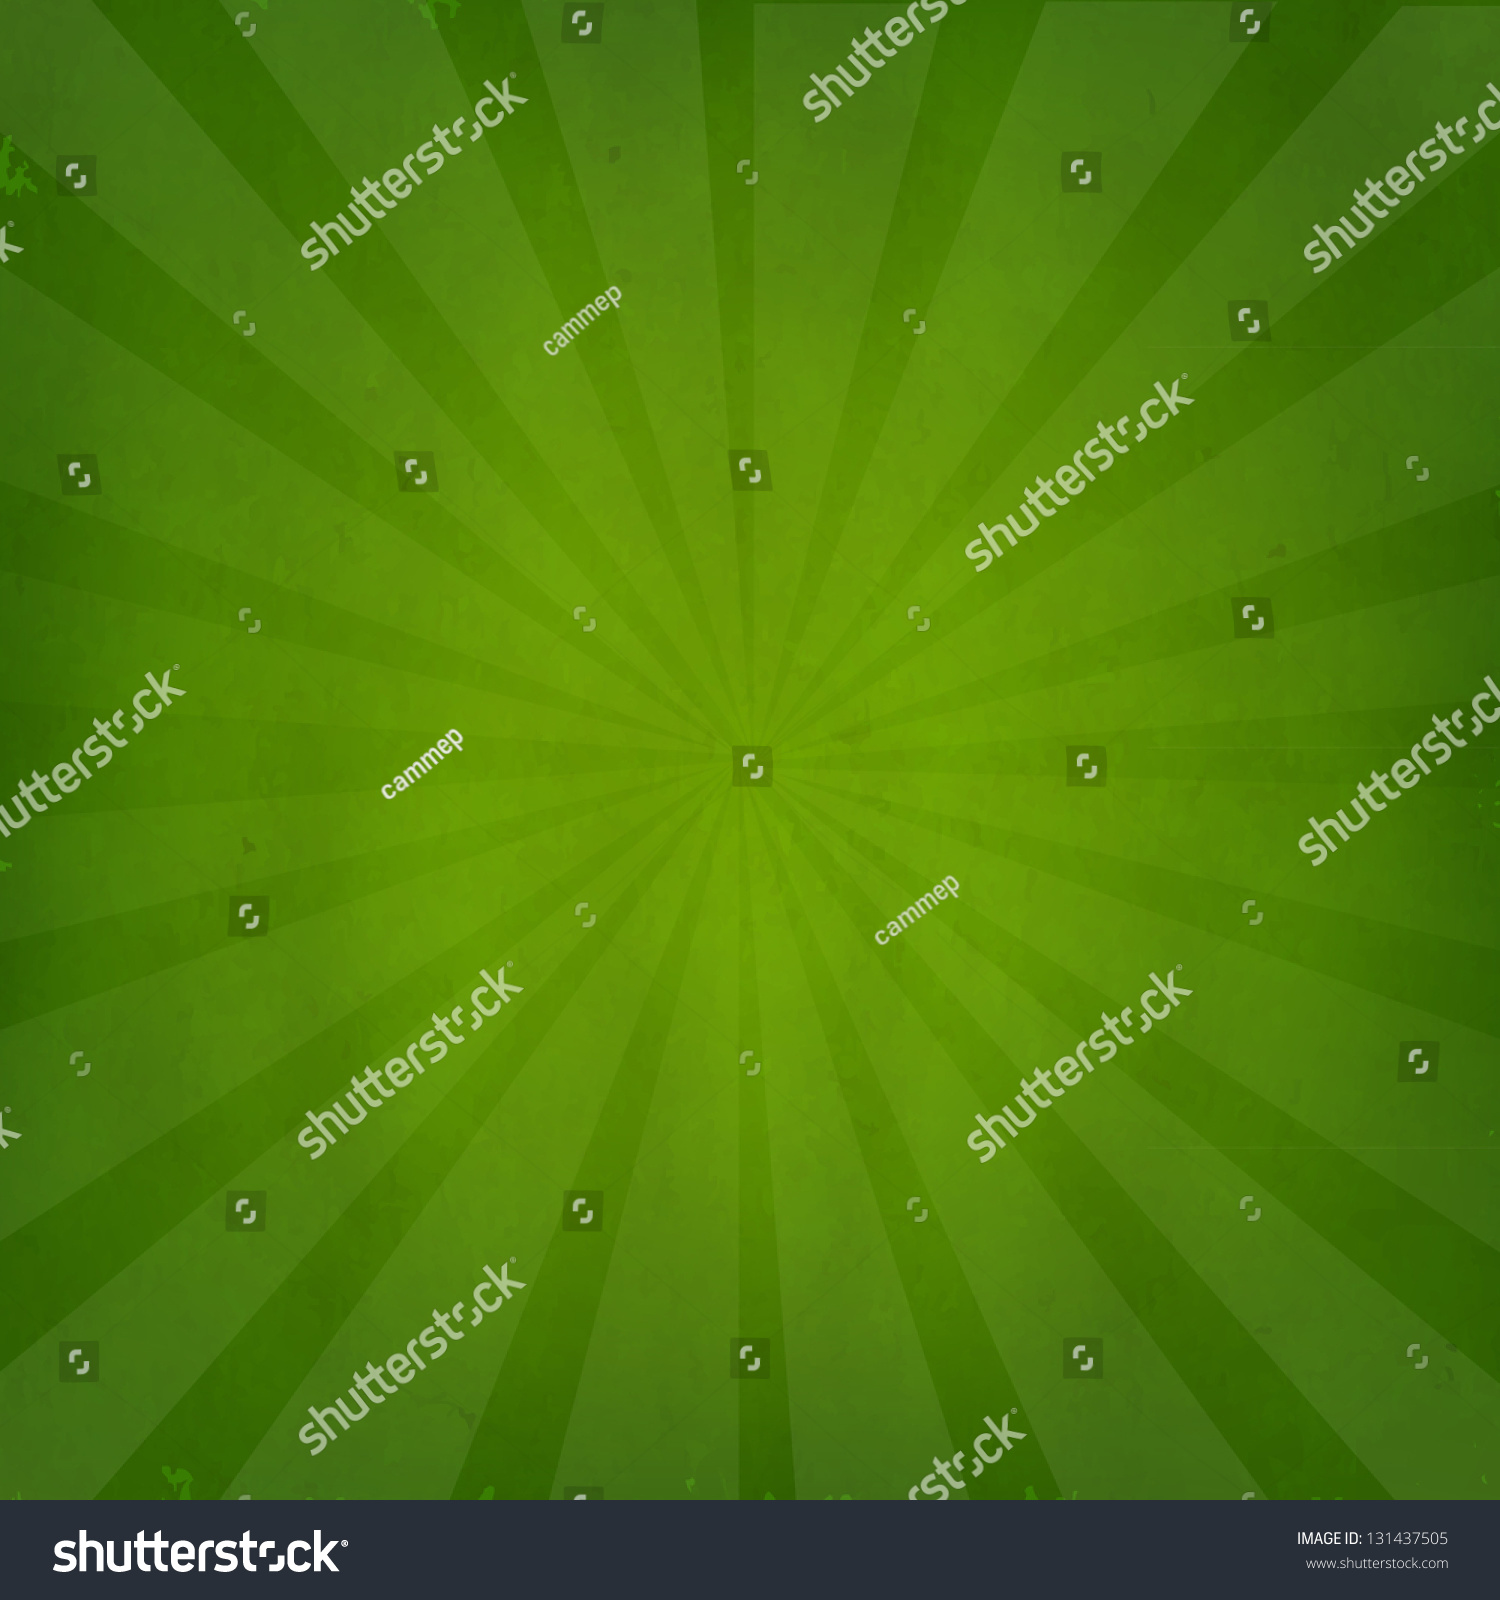 Green Grunge Background Texture Sunburst Gradient Stock Vector ...